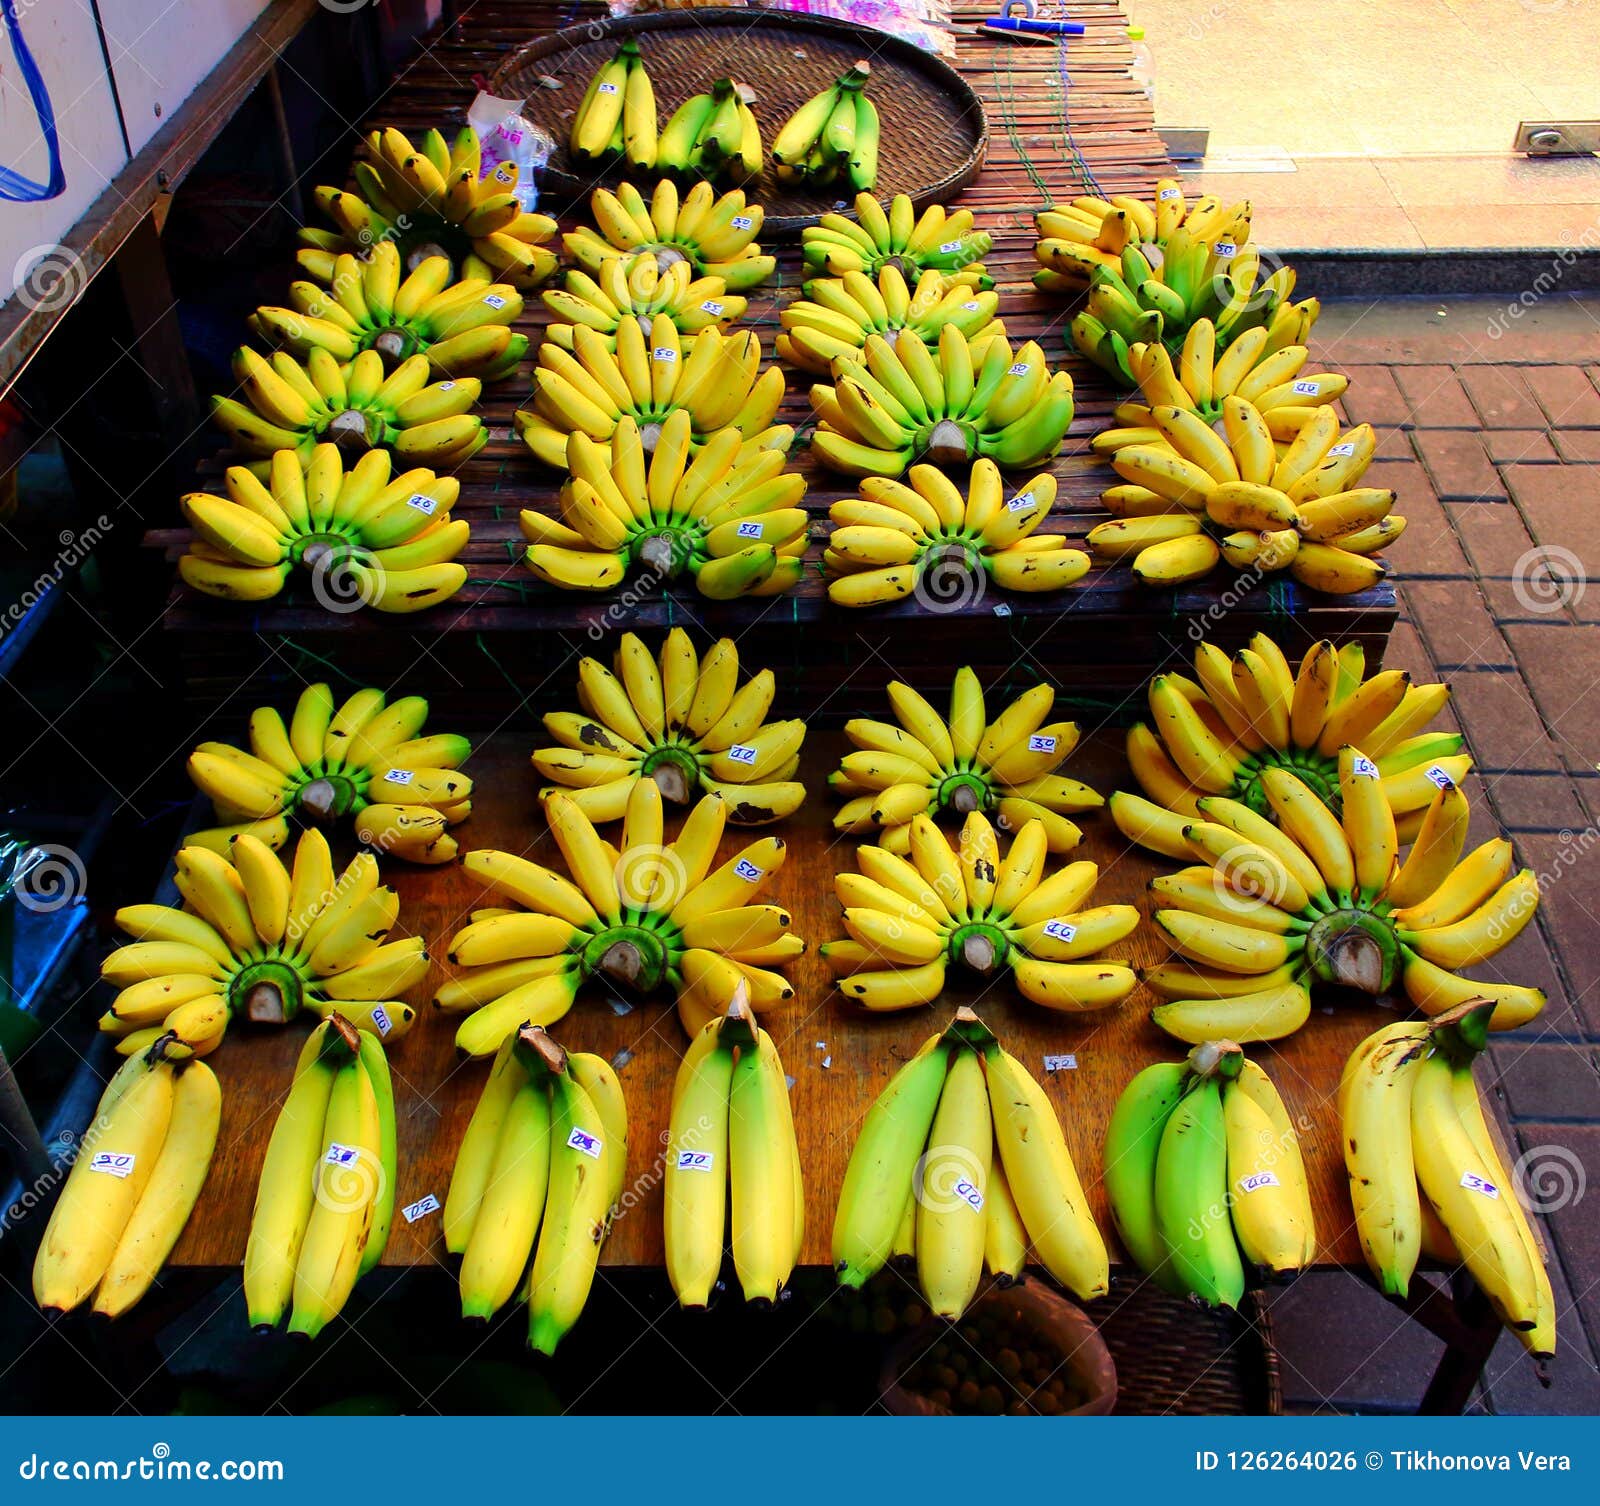 Fresh Organic Banana Bunch